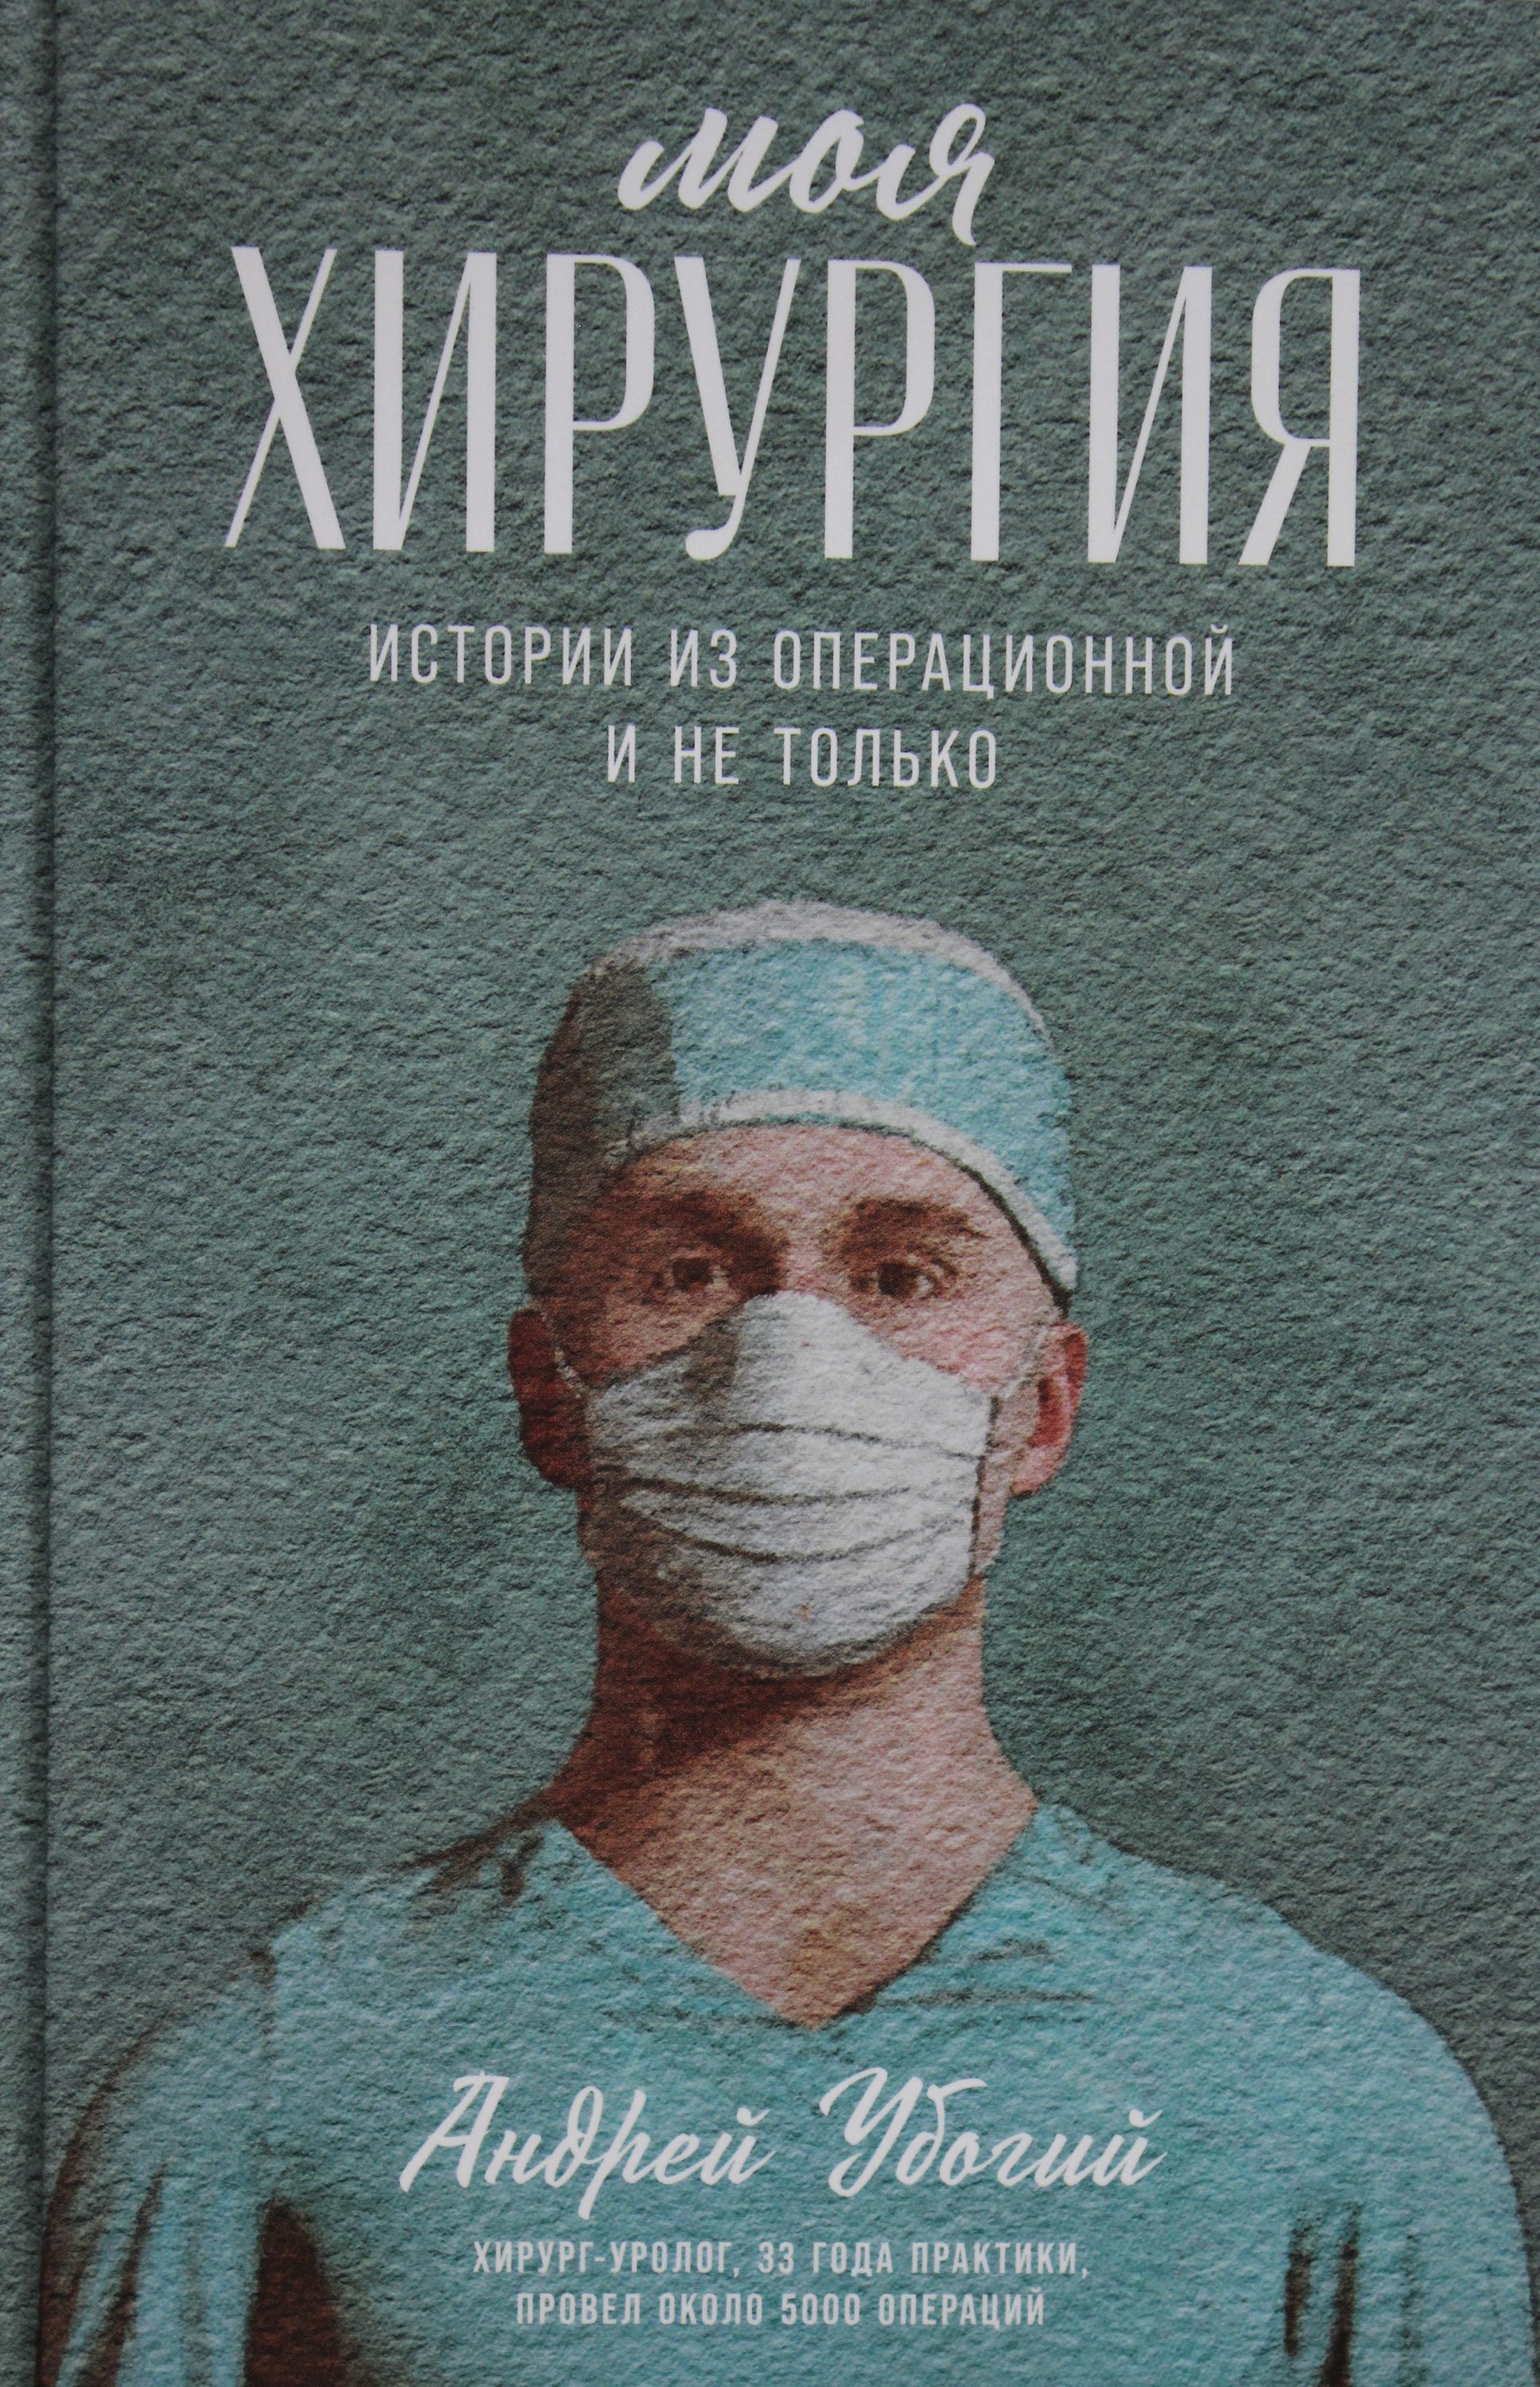 Читать книгу операция. Моя хирургия книга. Моя хирургия истории из операционной книга.